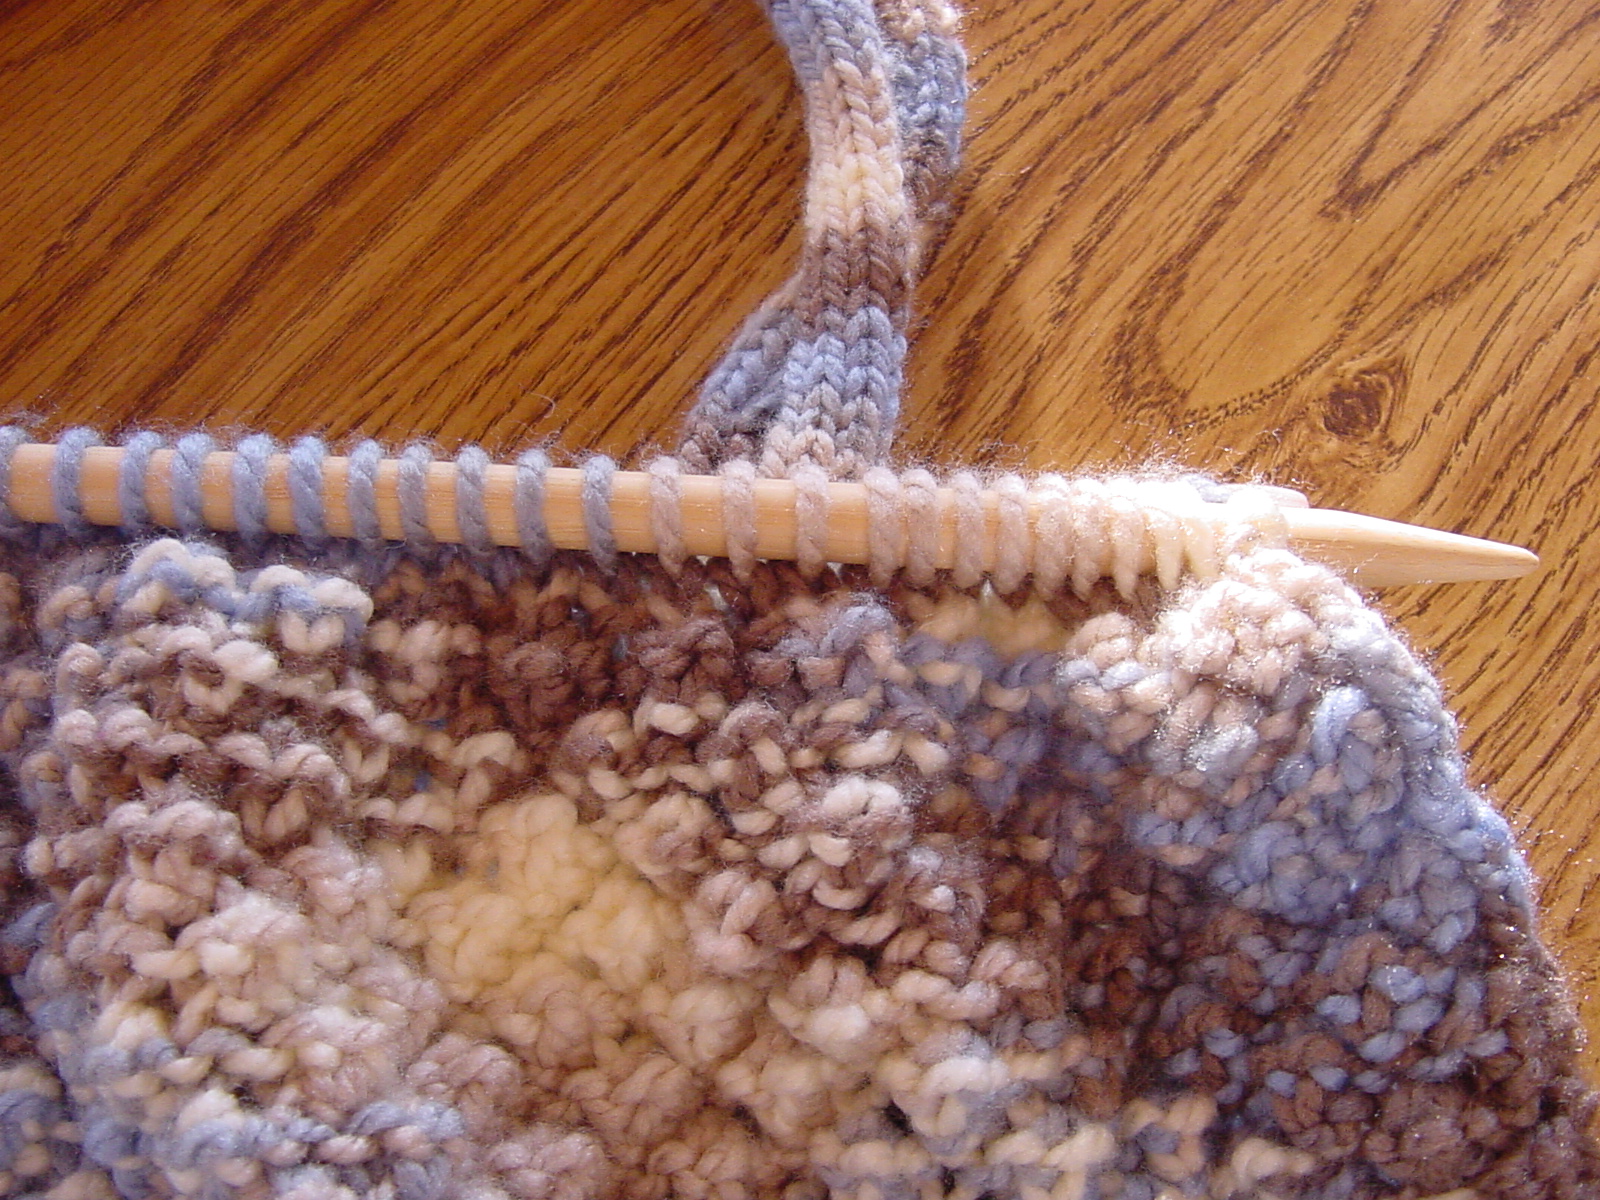 Close Up of Knitting Needles Knitting Bag